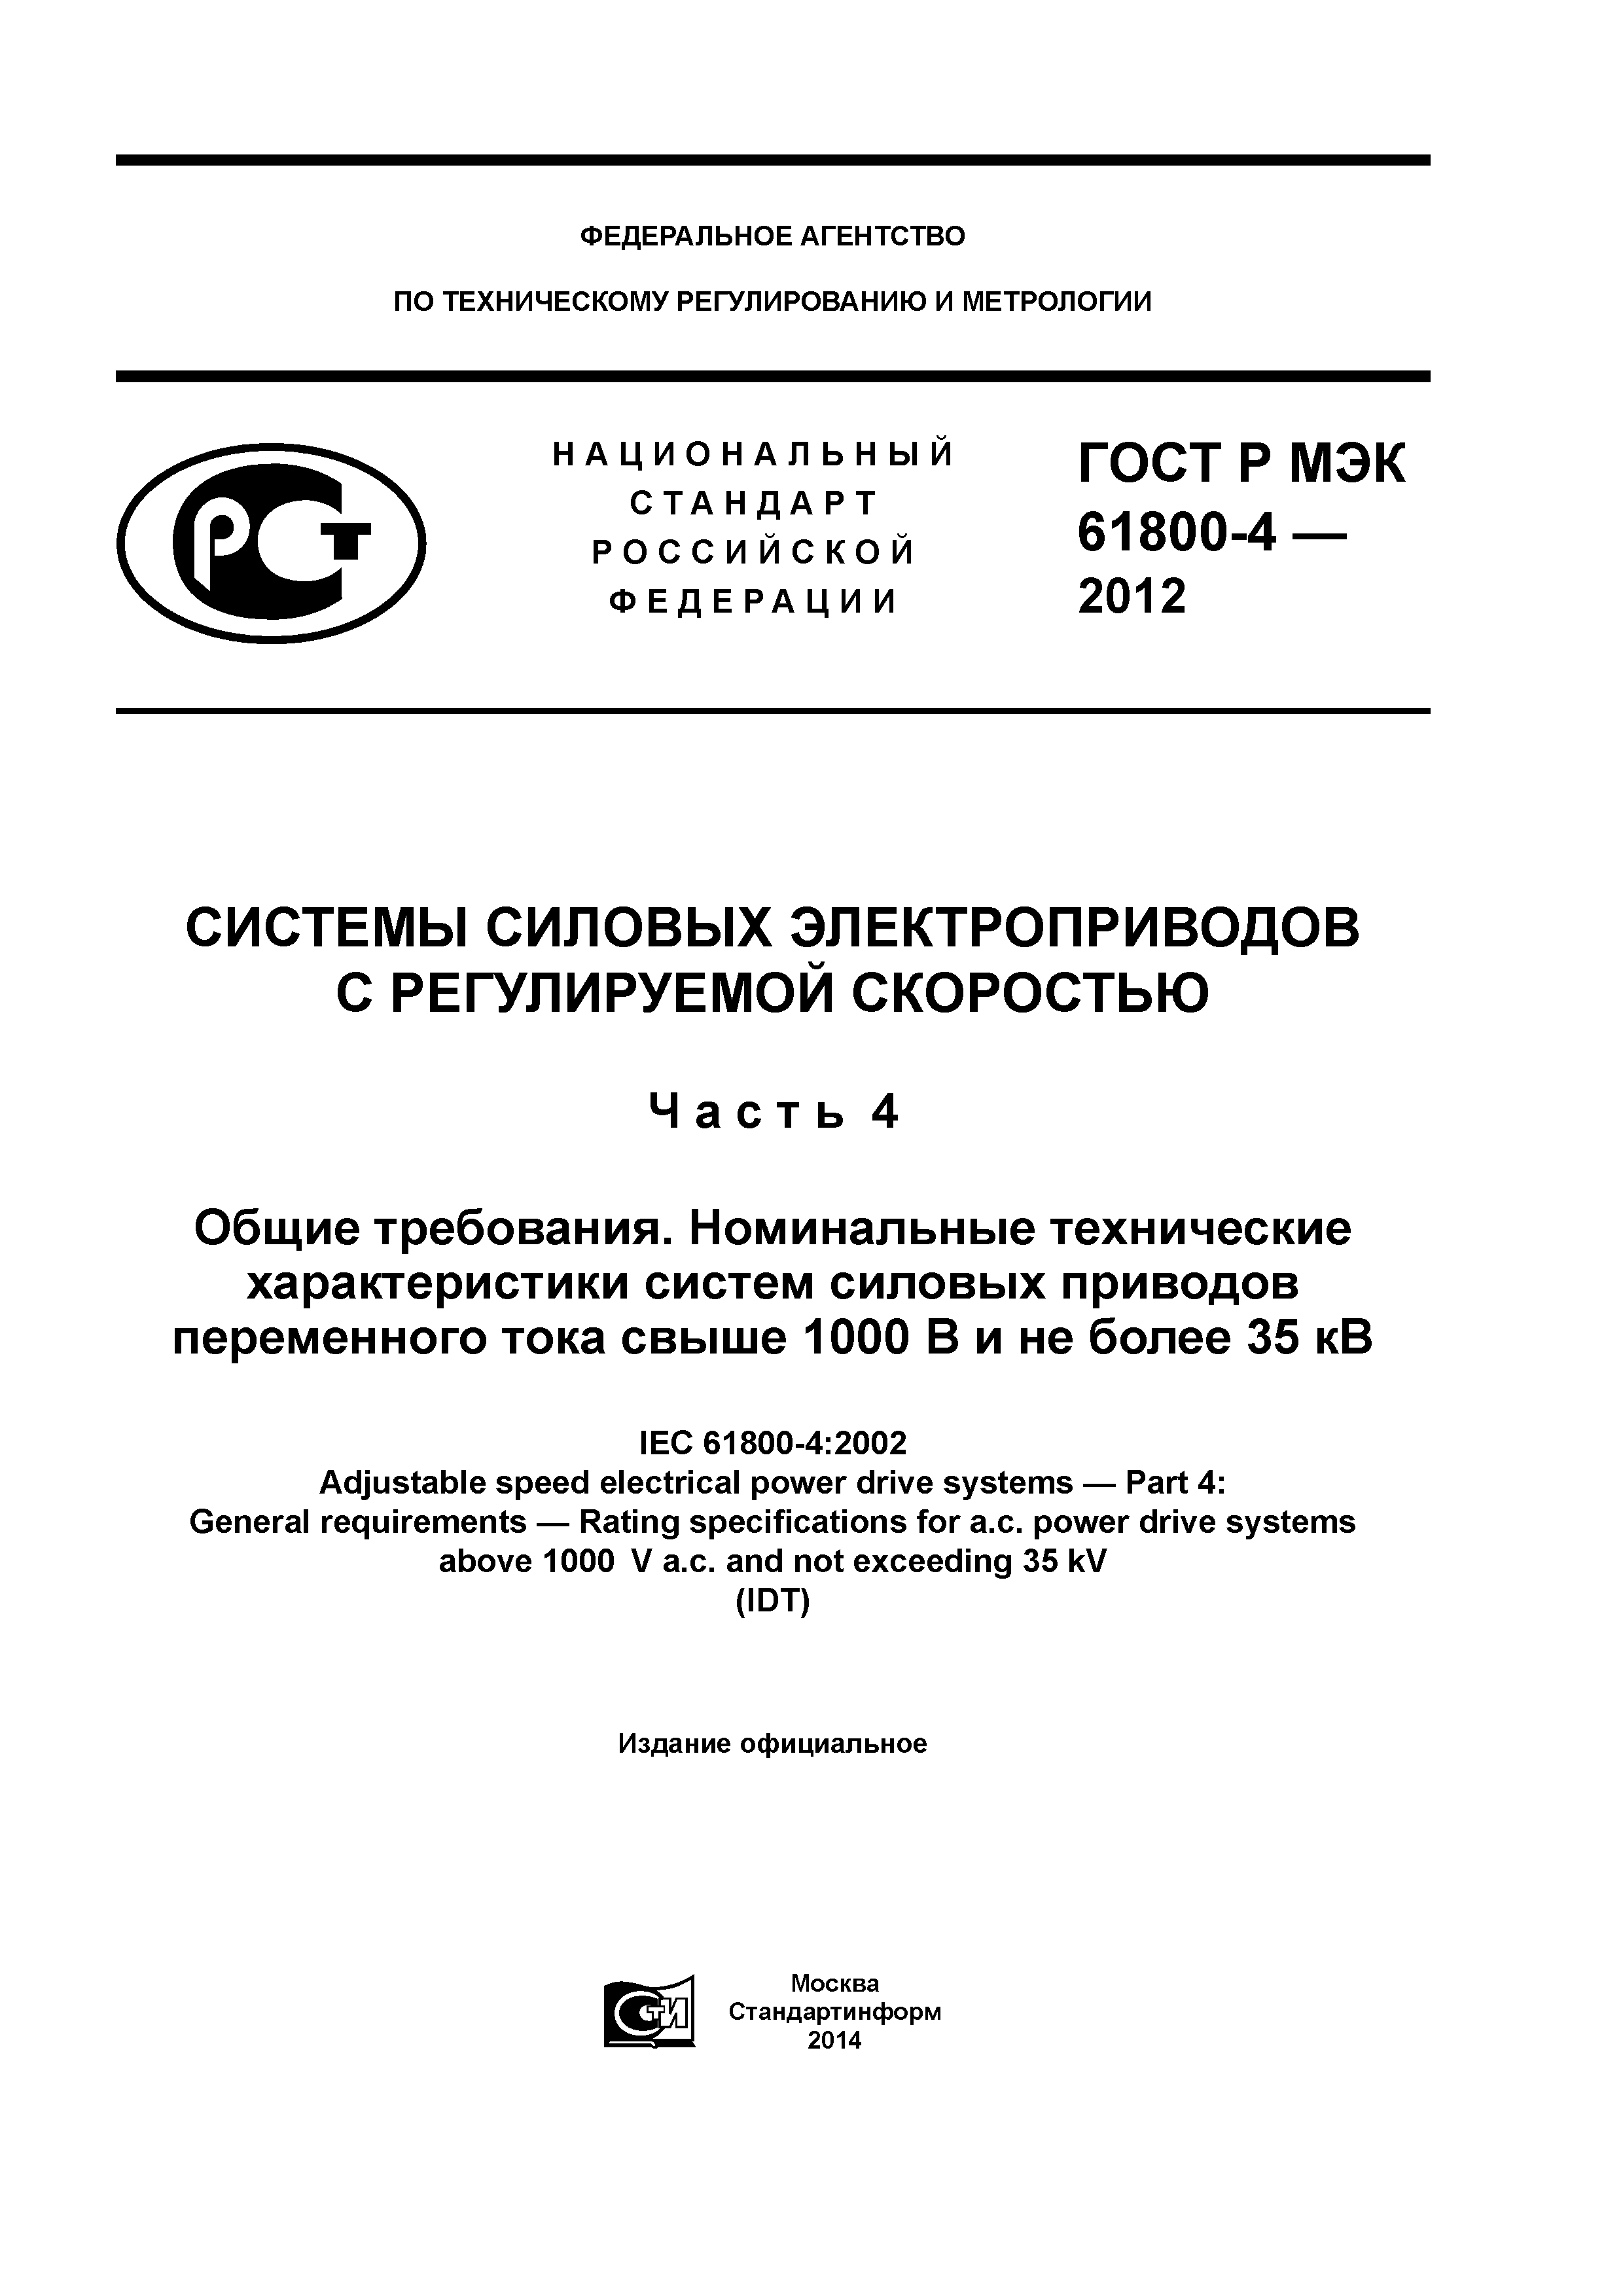 ГОСТ Р МЭК 61800-4-2012